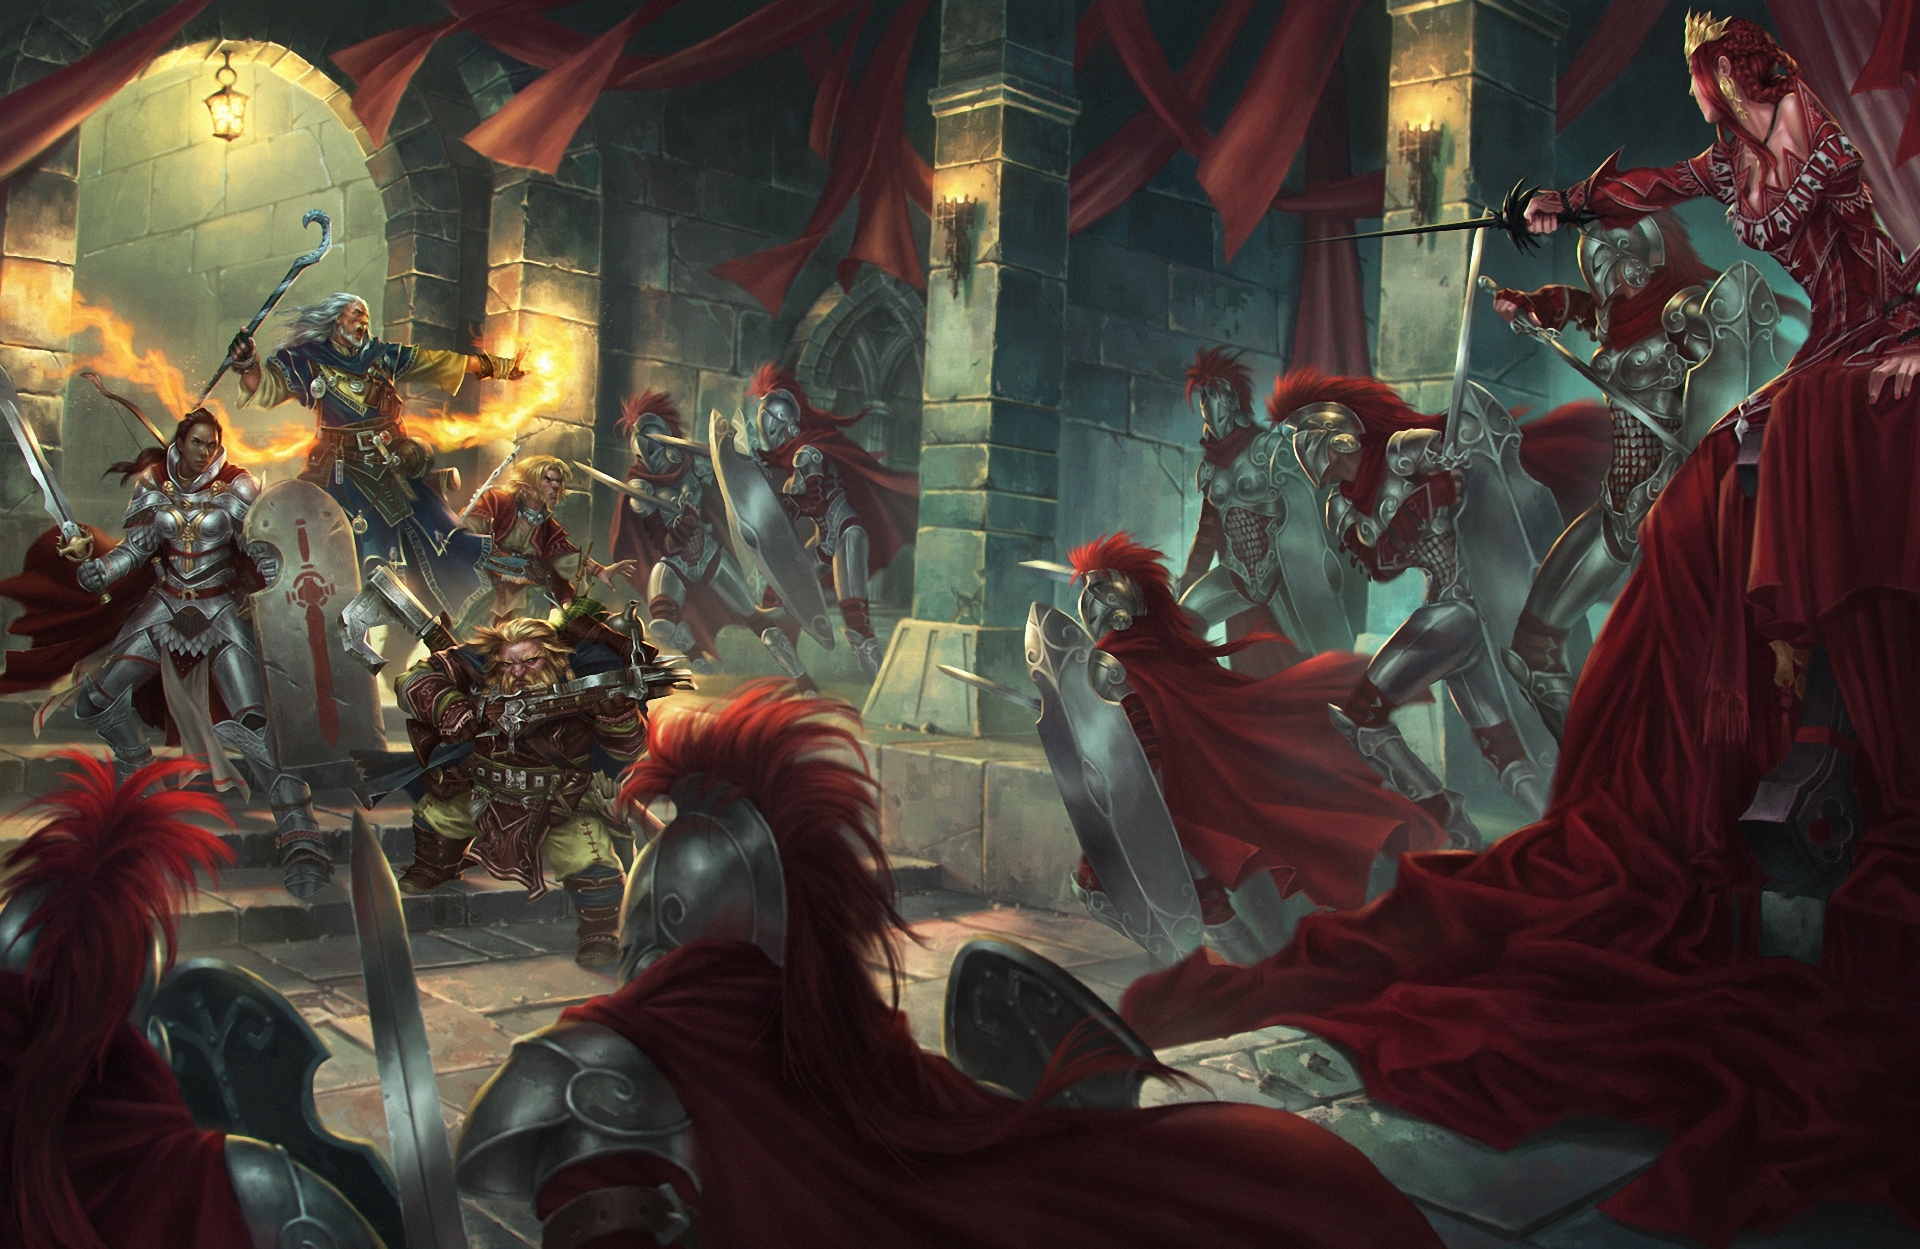 Free download wallpaper Fantasy, Knight, Battle, Sword, Dwarf, Wizard, Woman Warrior on your PC desktop